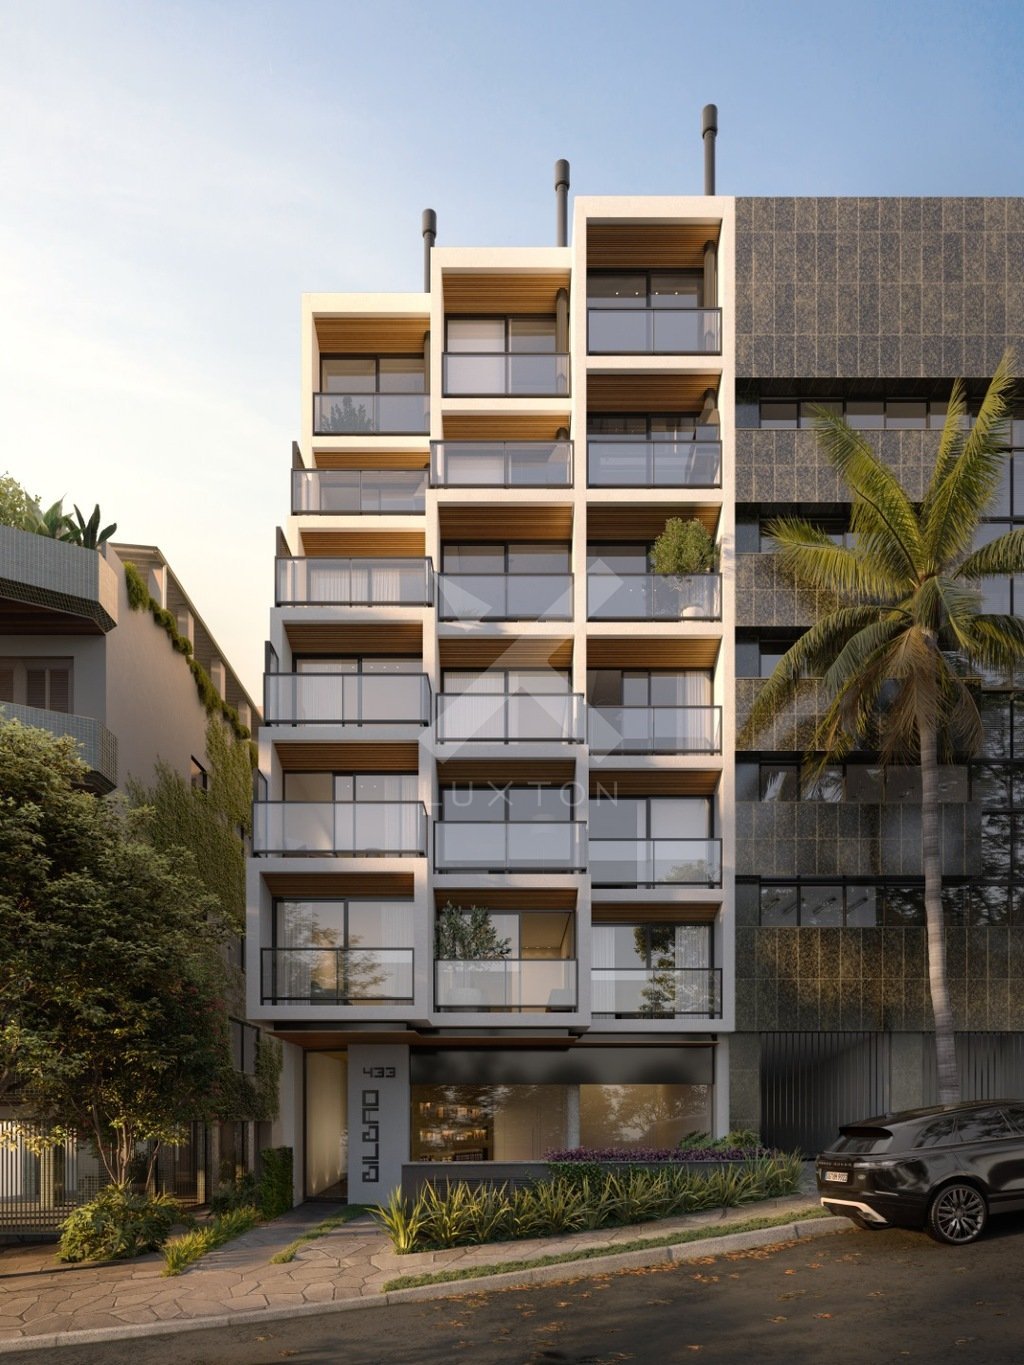 Cobertura com 52m², 1 dormitório, 1 suíte, no bairro Rio Branco em Porto Alegre para Comprar